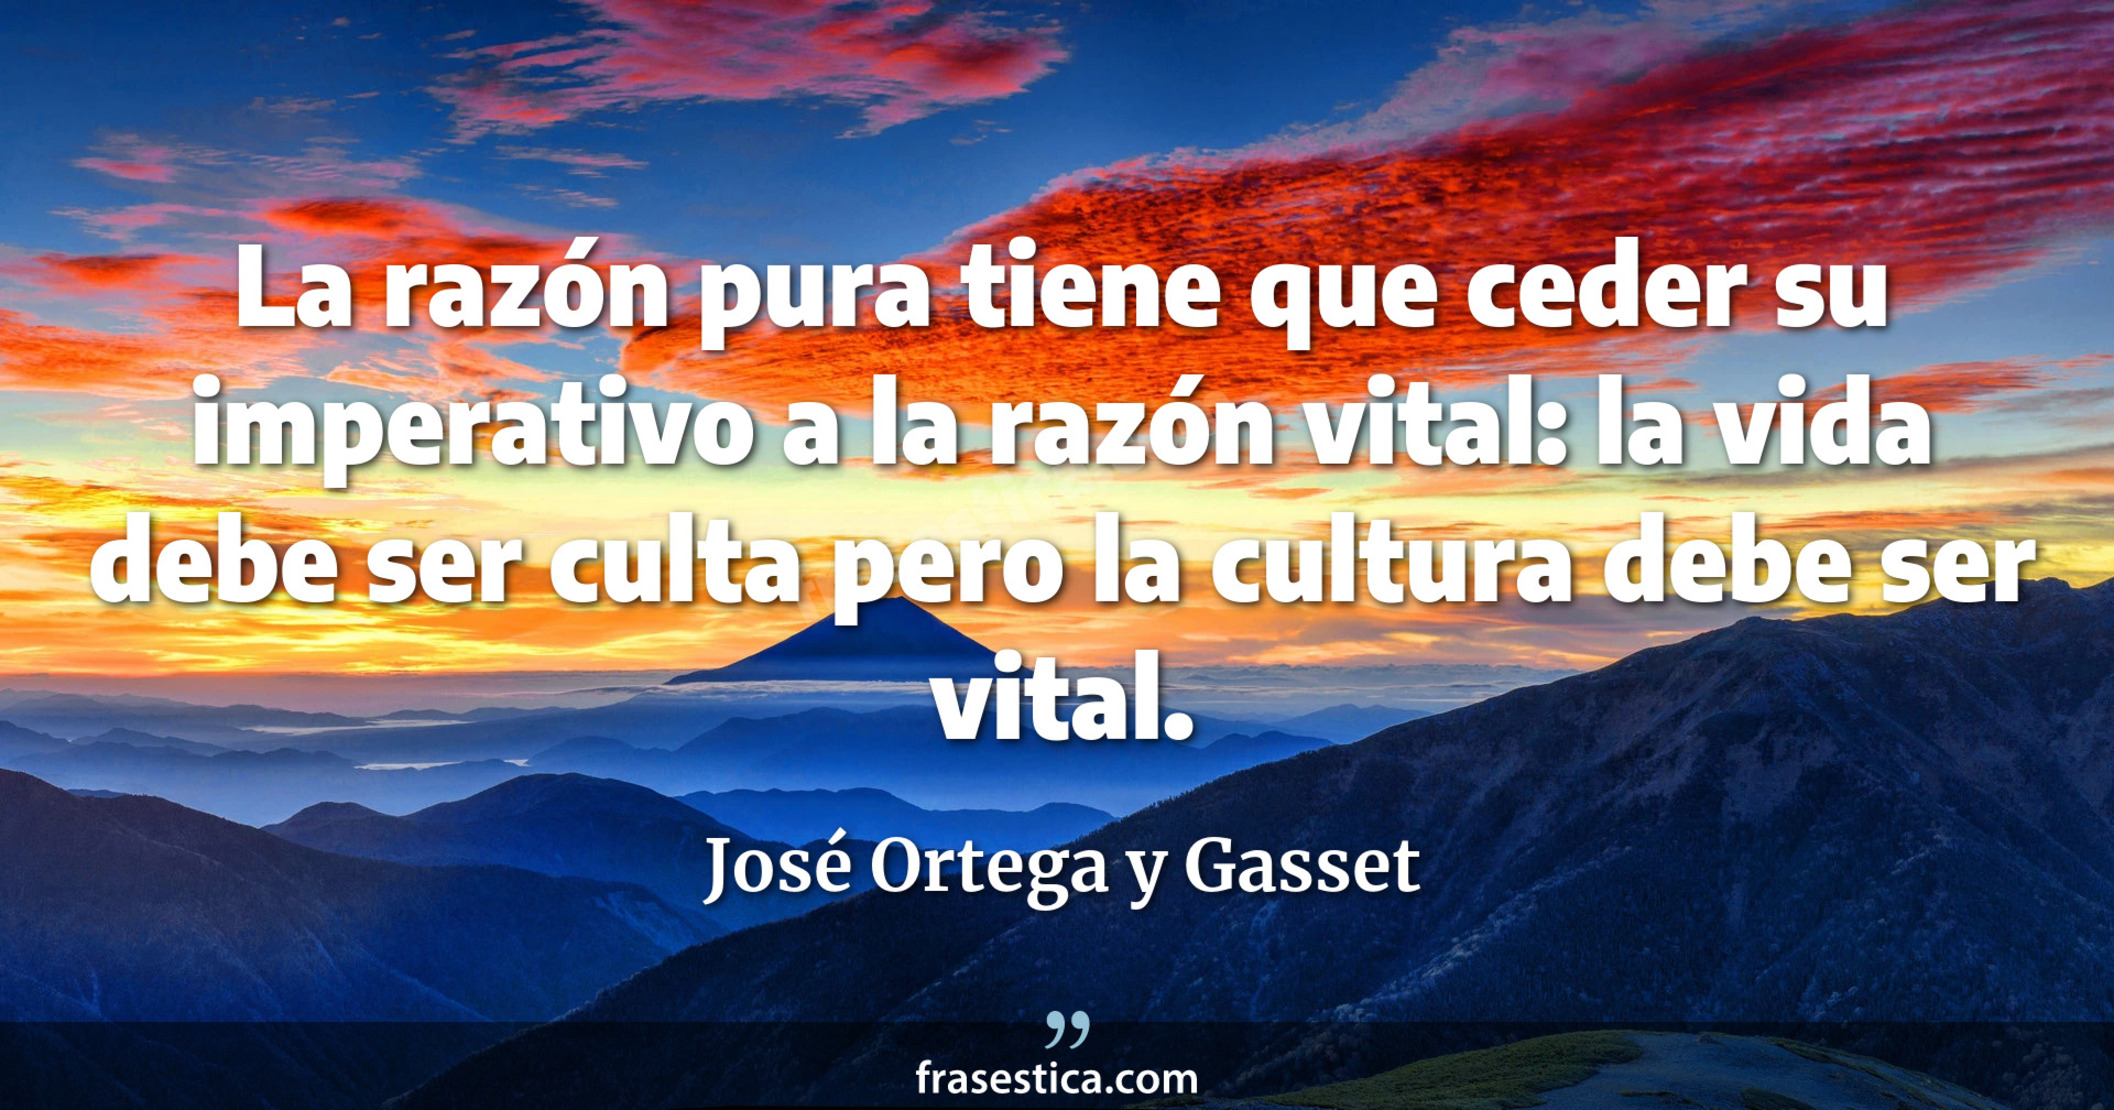 La razón pura tiene que ceder su imperativo a la razón vital: la vida debe ser culta pero la cultura debe ser vital. - José Ortega y Gasset